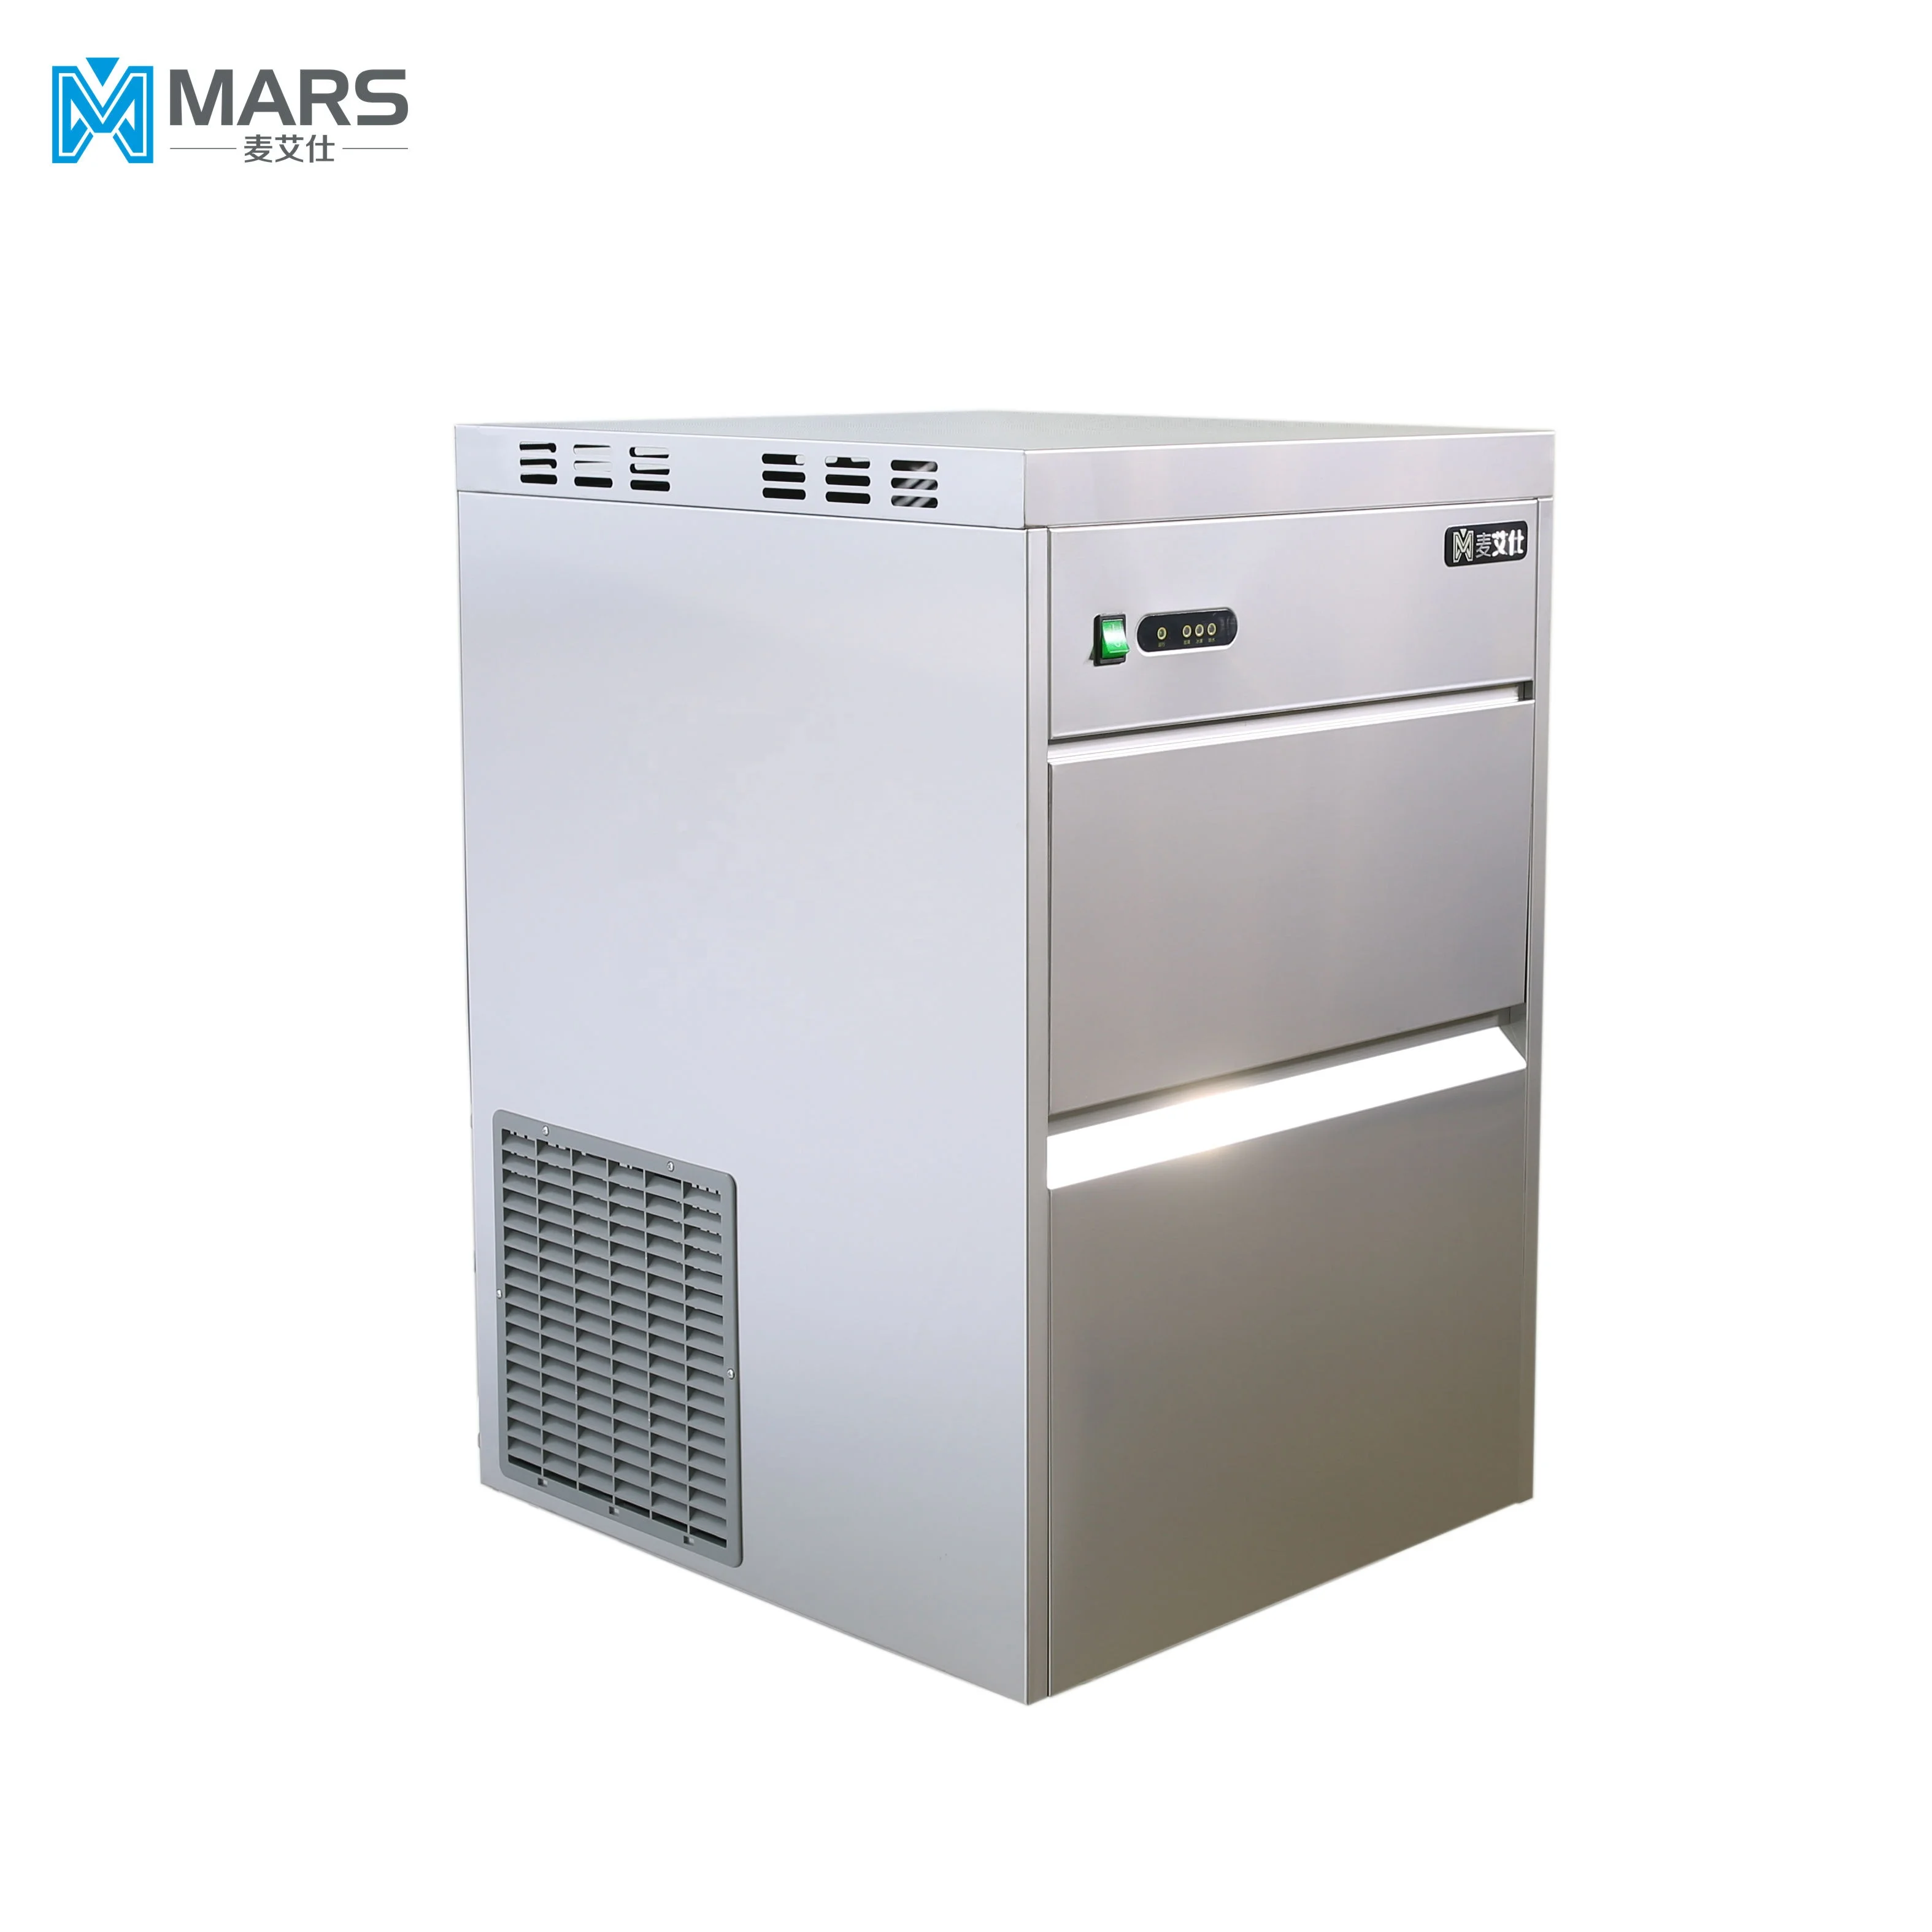 IMS-130 Льдогенератор льда в гранулах/льдогенератор (130 кг/24